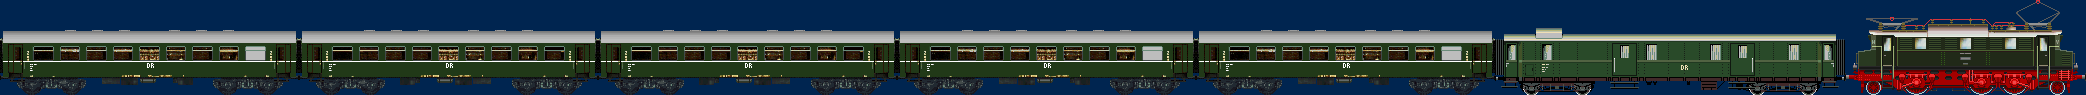 DR E04 mit Personenzug aus Rekovierachsern Ep III und Pw4i 32